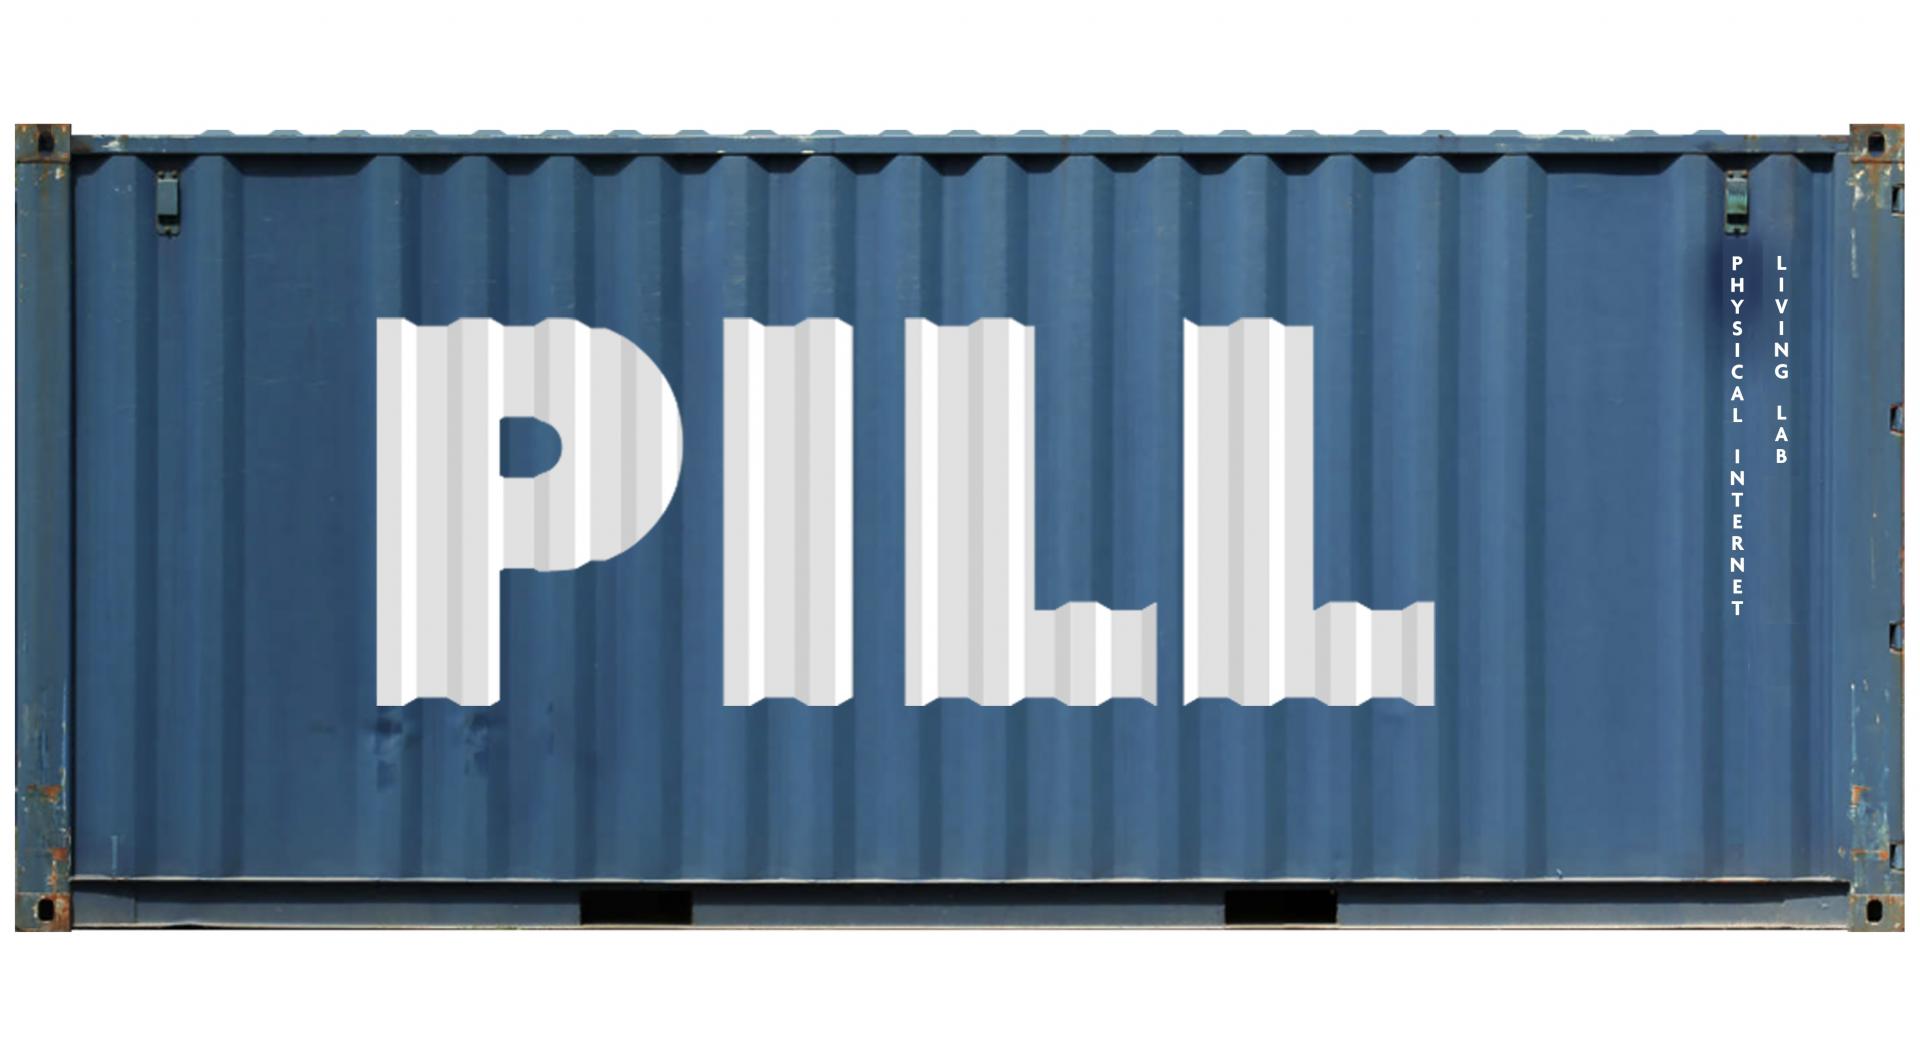 PILL logo